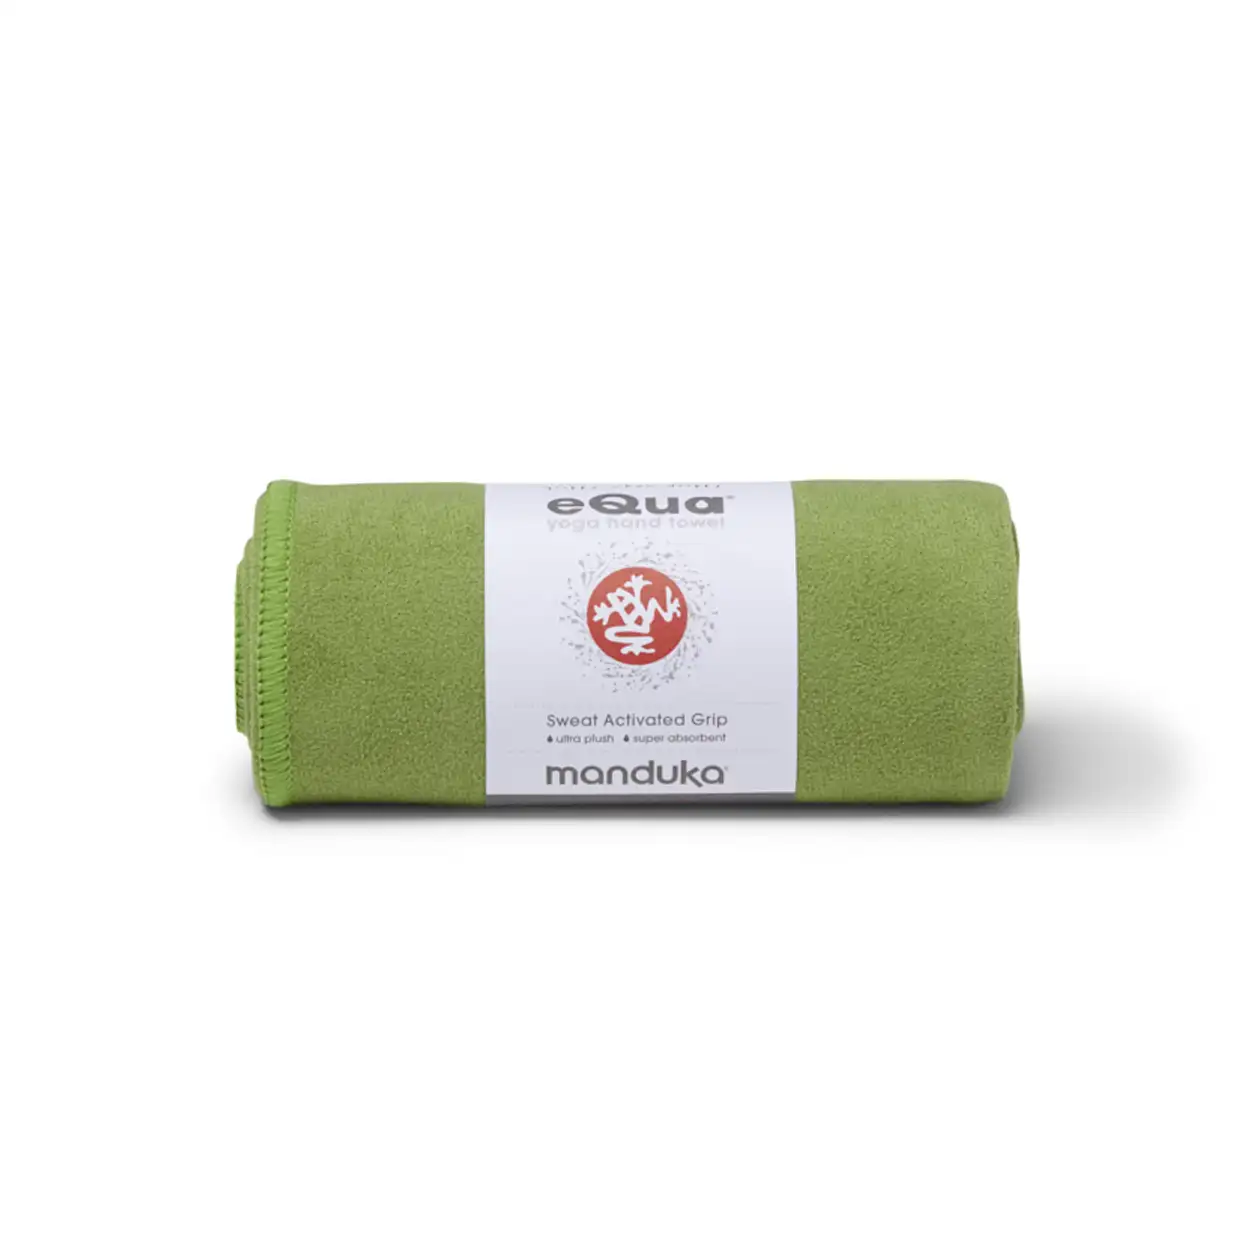 Manduka eQua Hand Towel - Matcha - Green